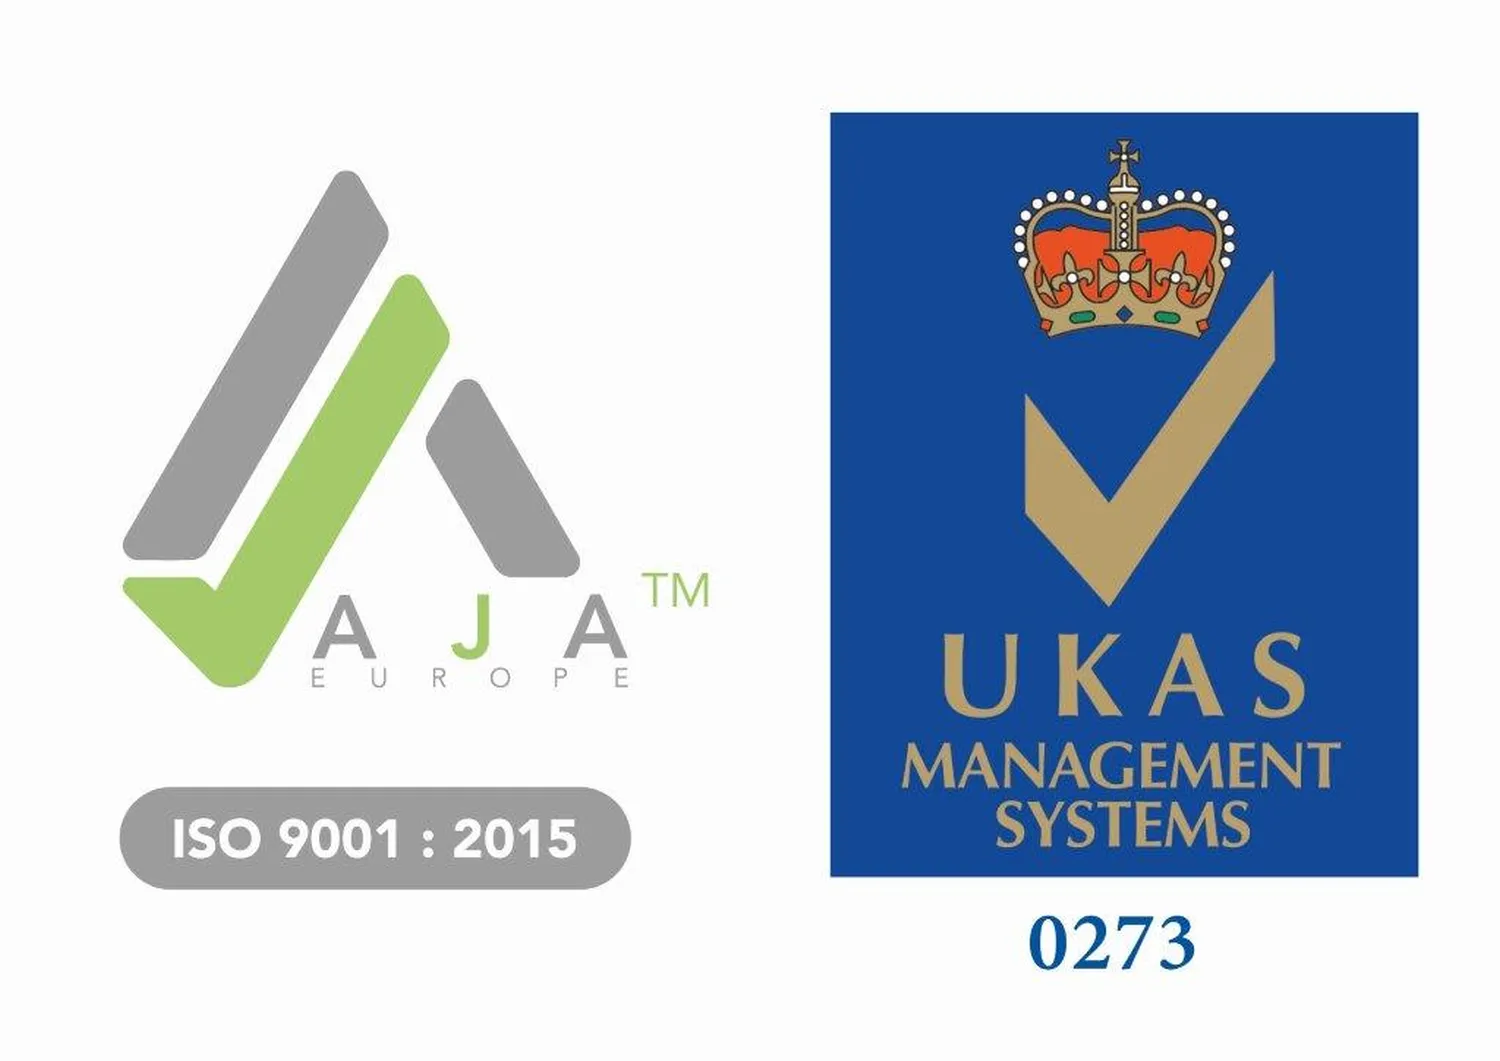 Qualitätsrichtlinien-Logos des ATC-Systems